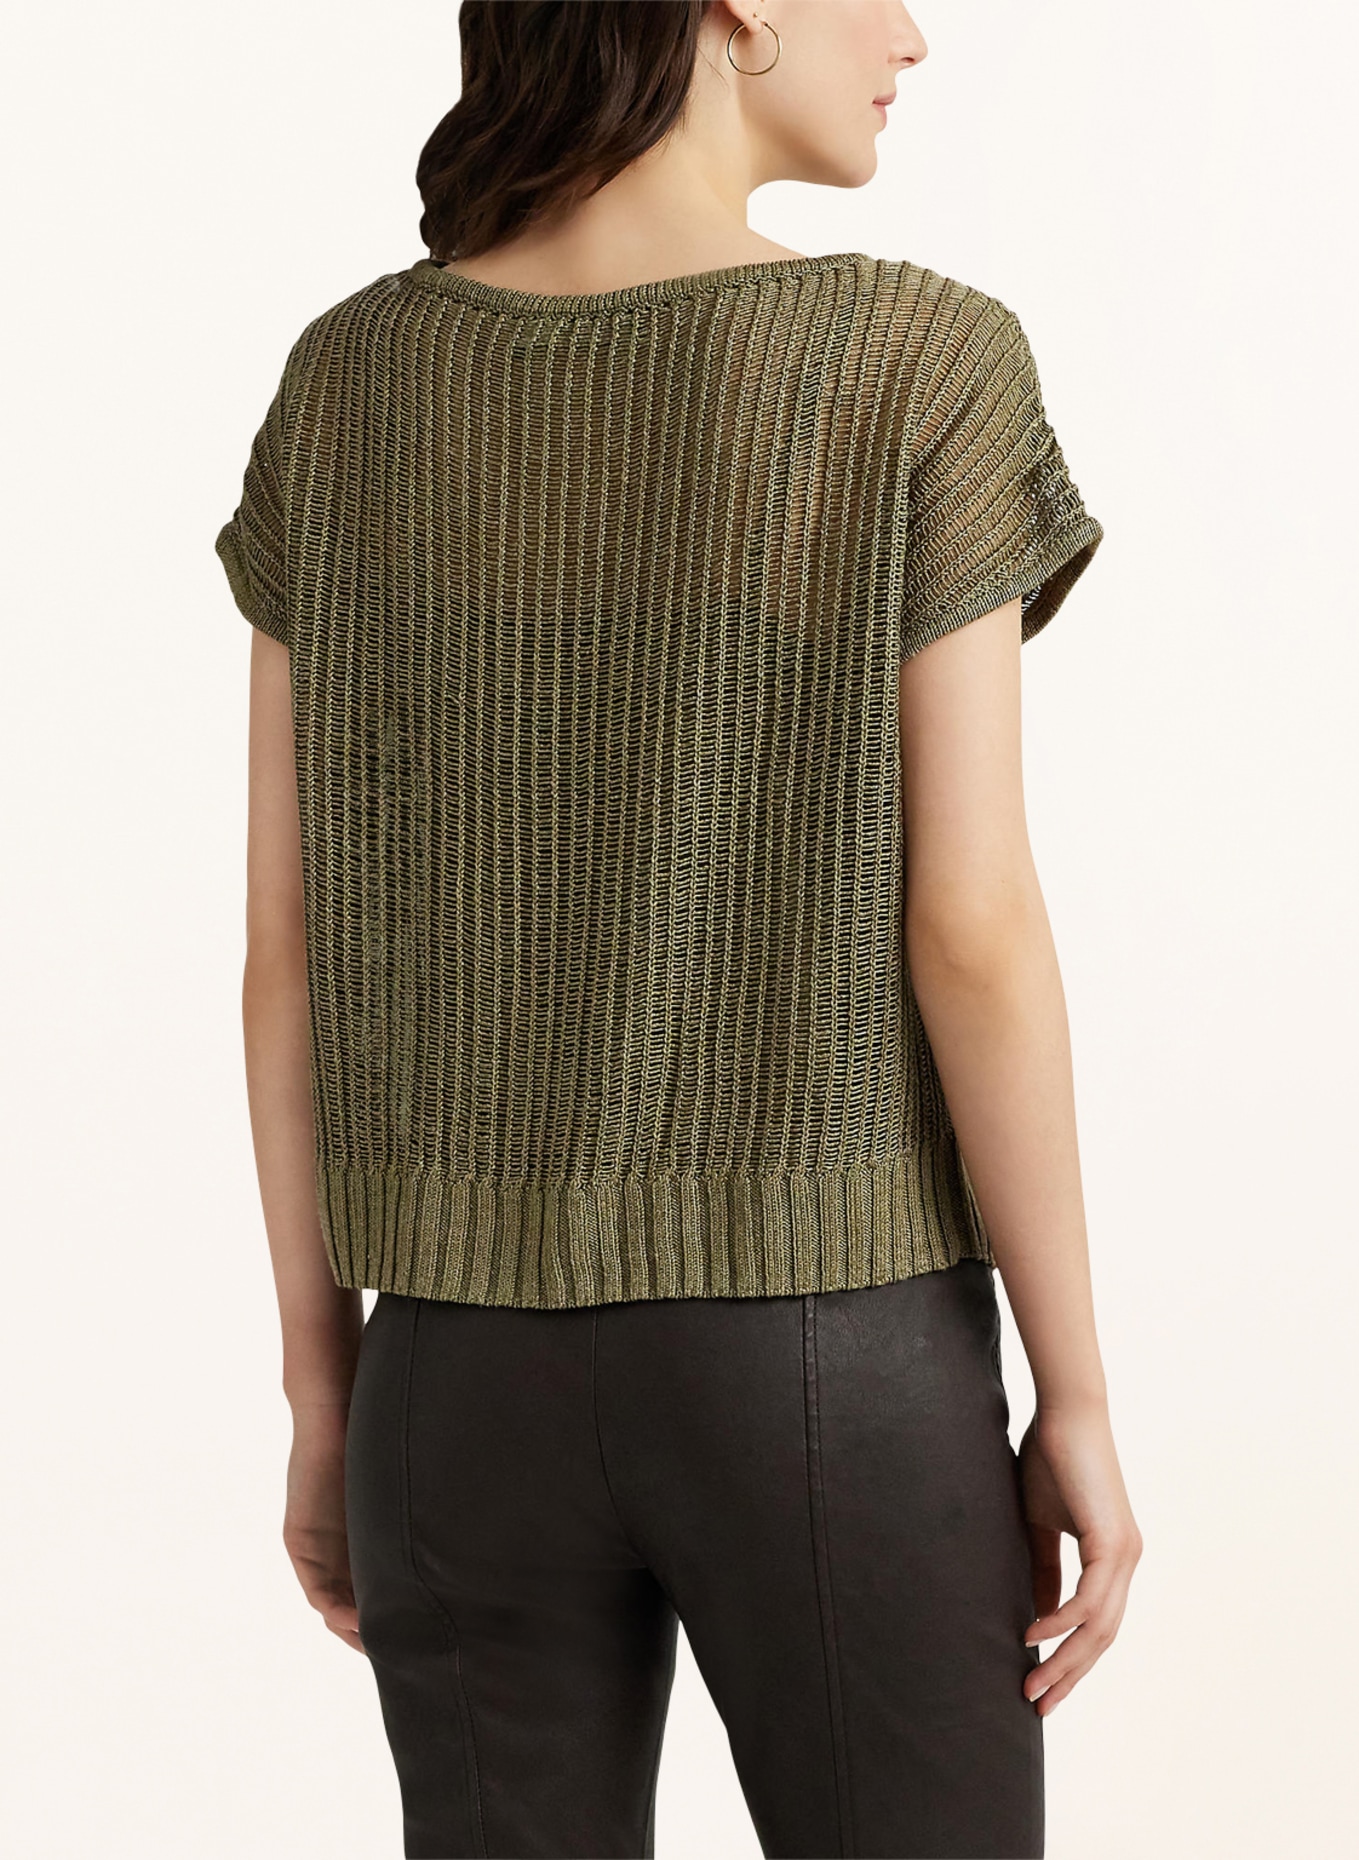 LAUREN RALPH LAUREN Knit shirt, Color: OLIVE (Image 3)